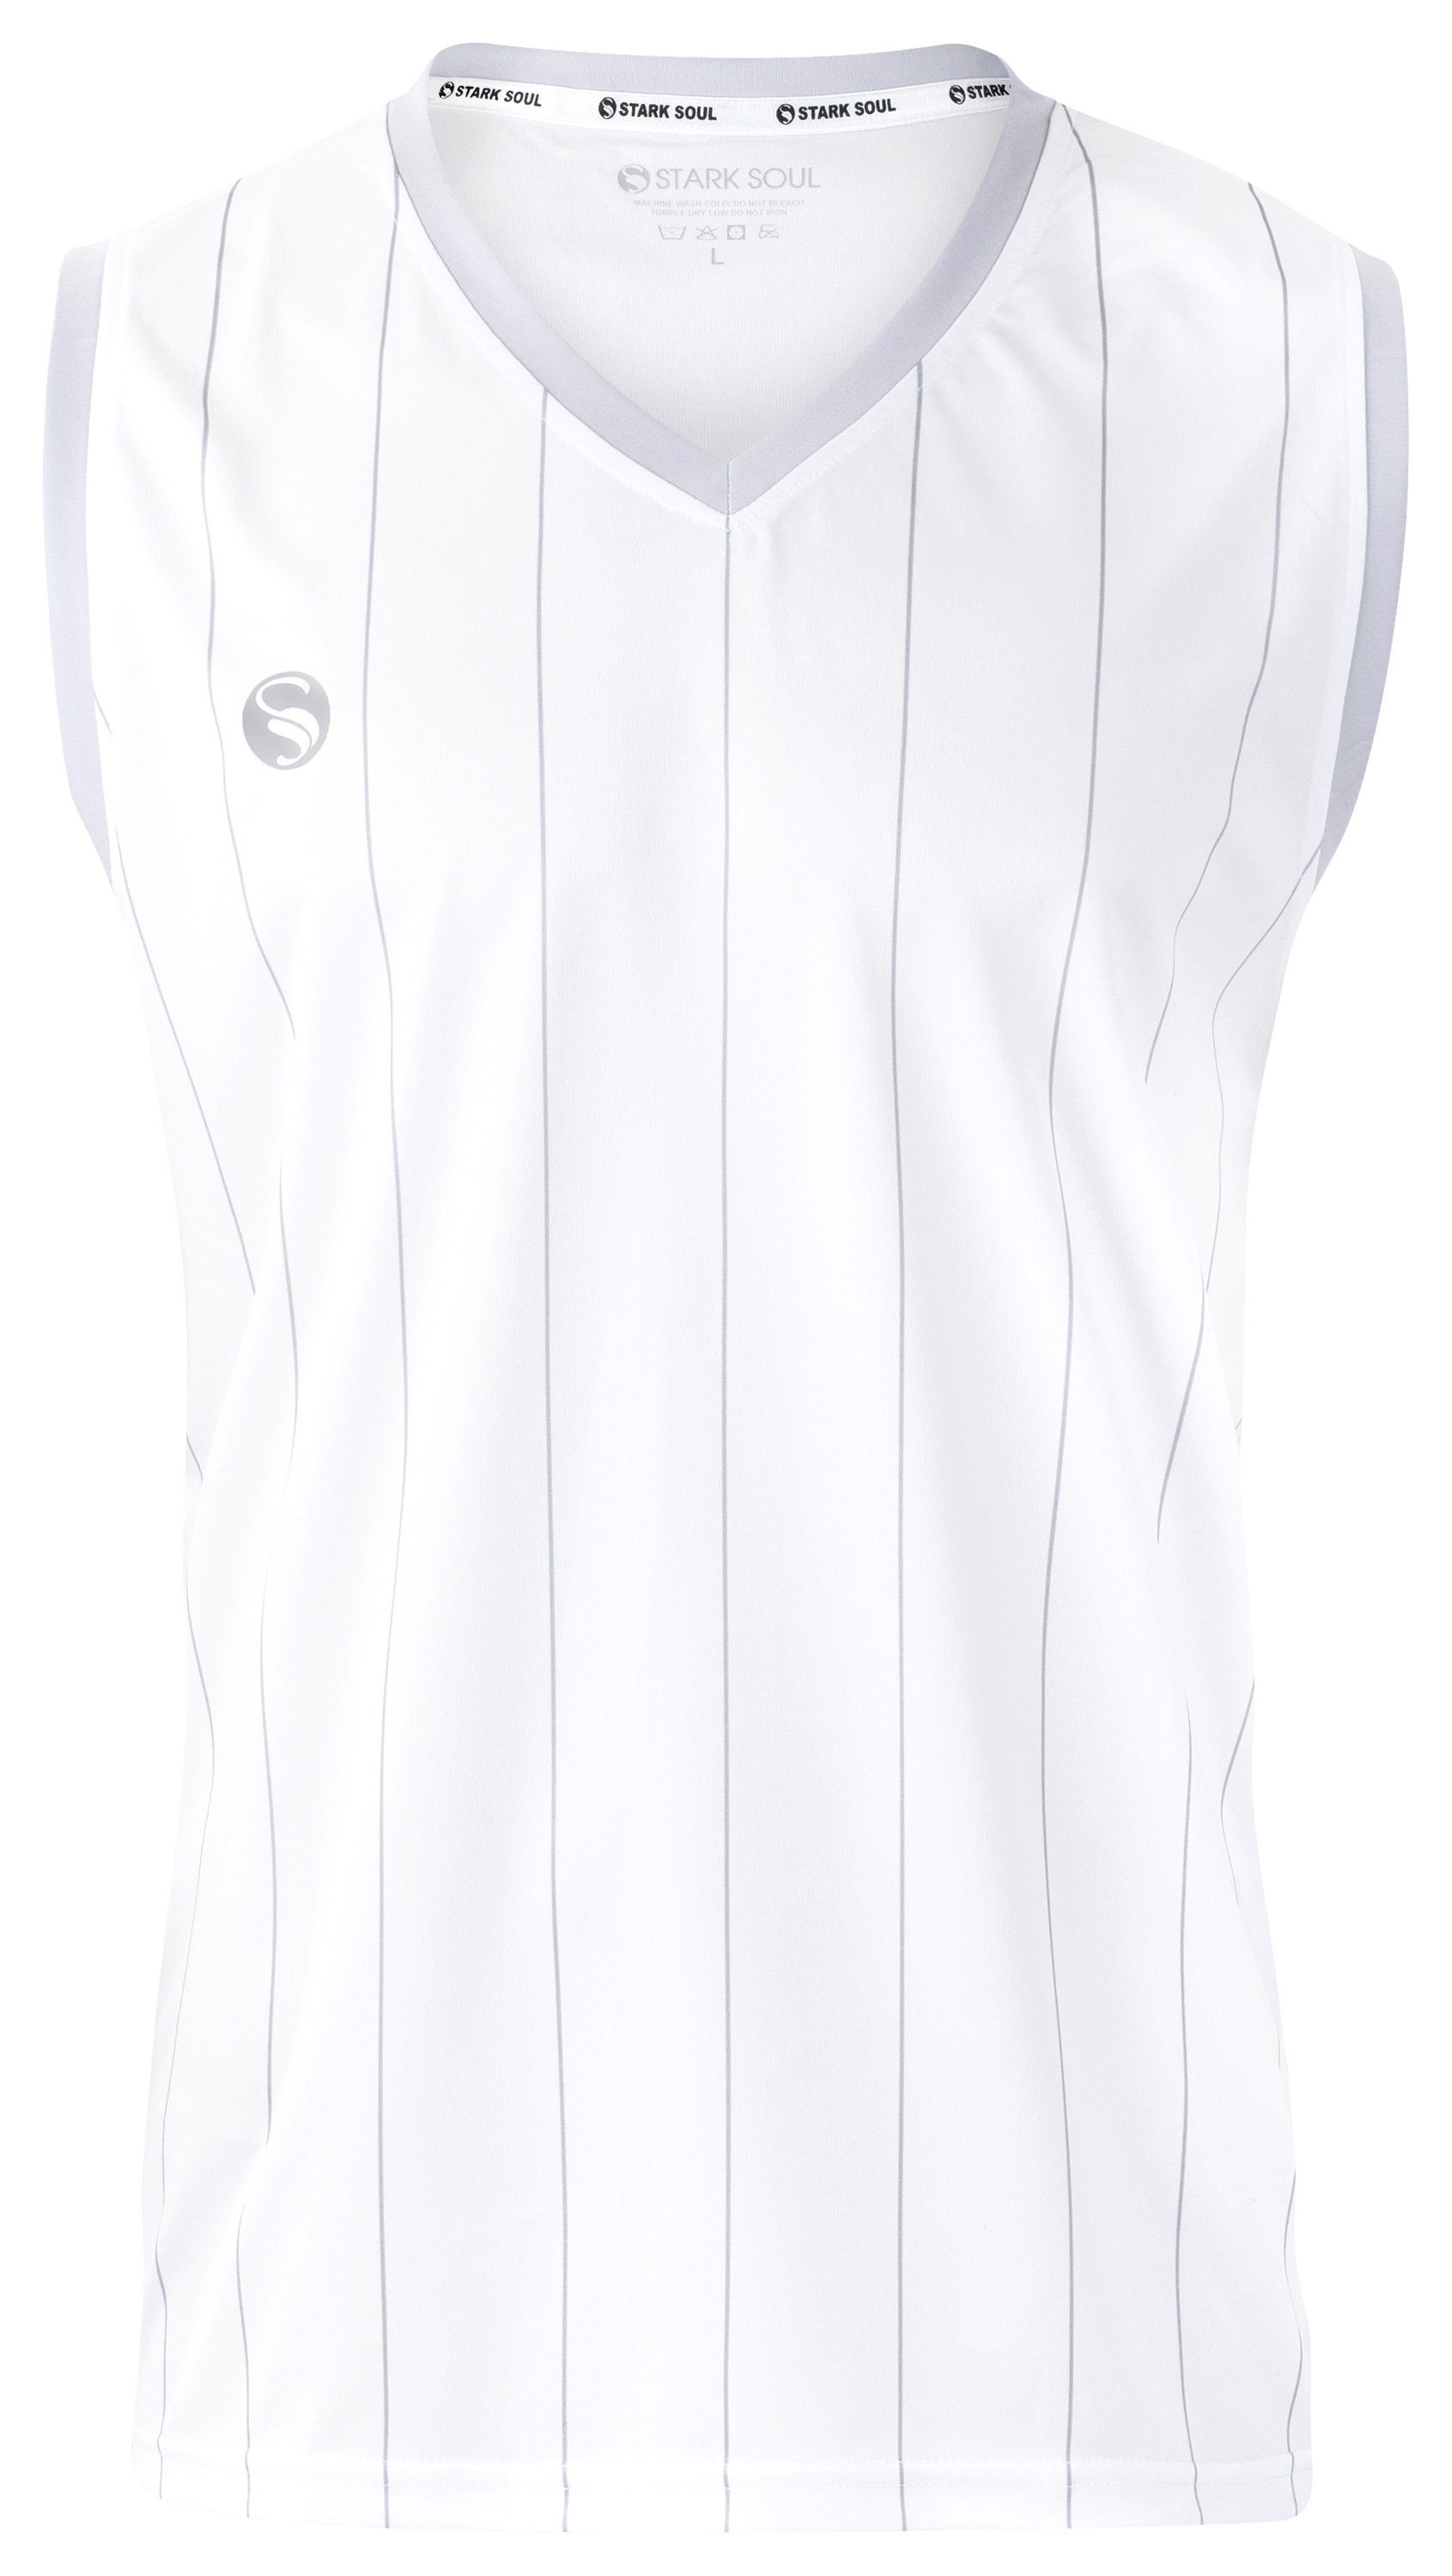 "Pinstripes" V-Ausschnitt Weiß Ärmelloses T-Shirt Trainingsshirt Sport Logo-Print Stark Soul® mit mit